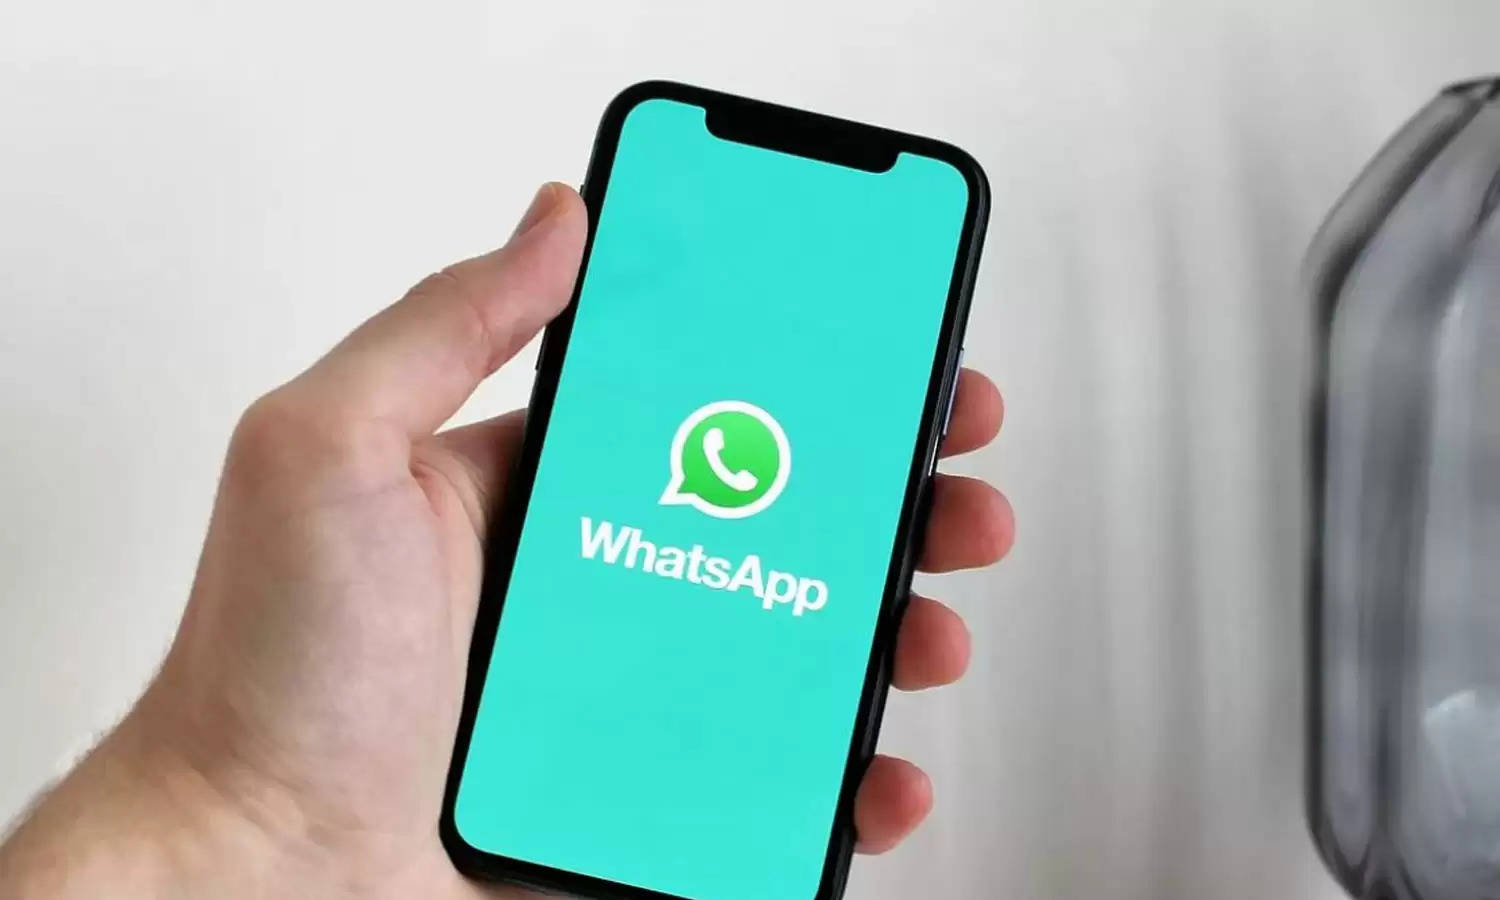 WhatsApp अगले महीने से इन स्मार्टफोन्स में काम नहीं करेगा, देखें पूरी लिस्ट